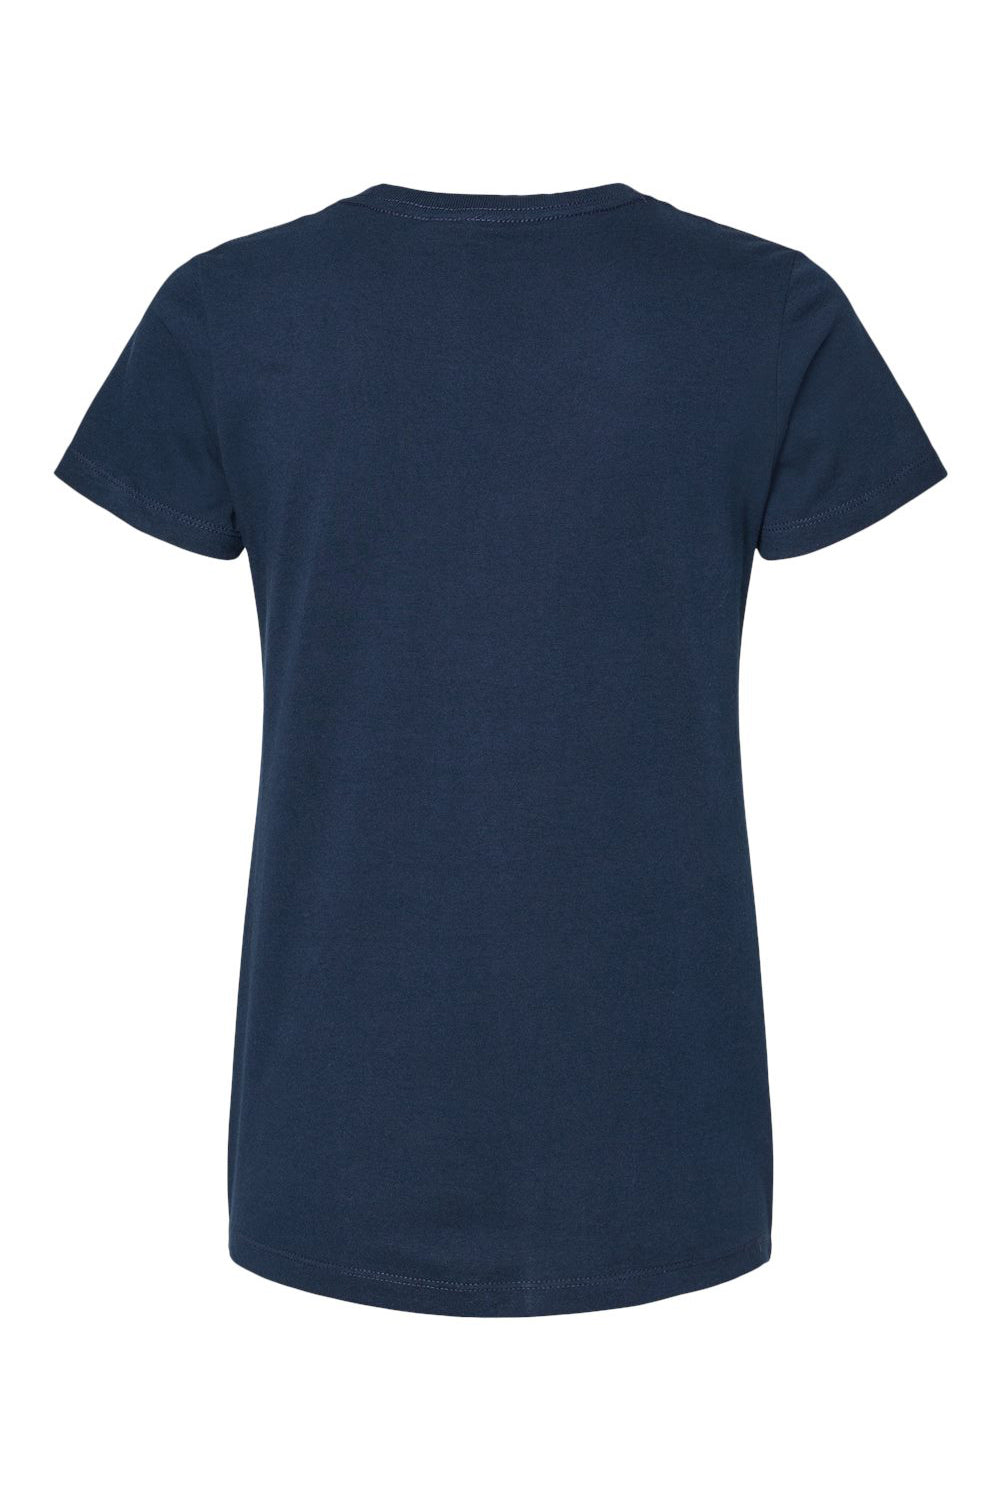 M&O 4810 Womens Gold Soft Touch Short Sleeve Crewneck T-Shirt Deep Navy Blue Flat Back